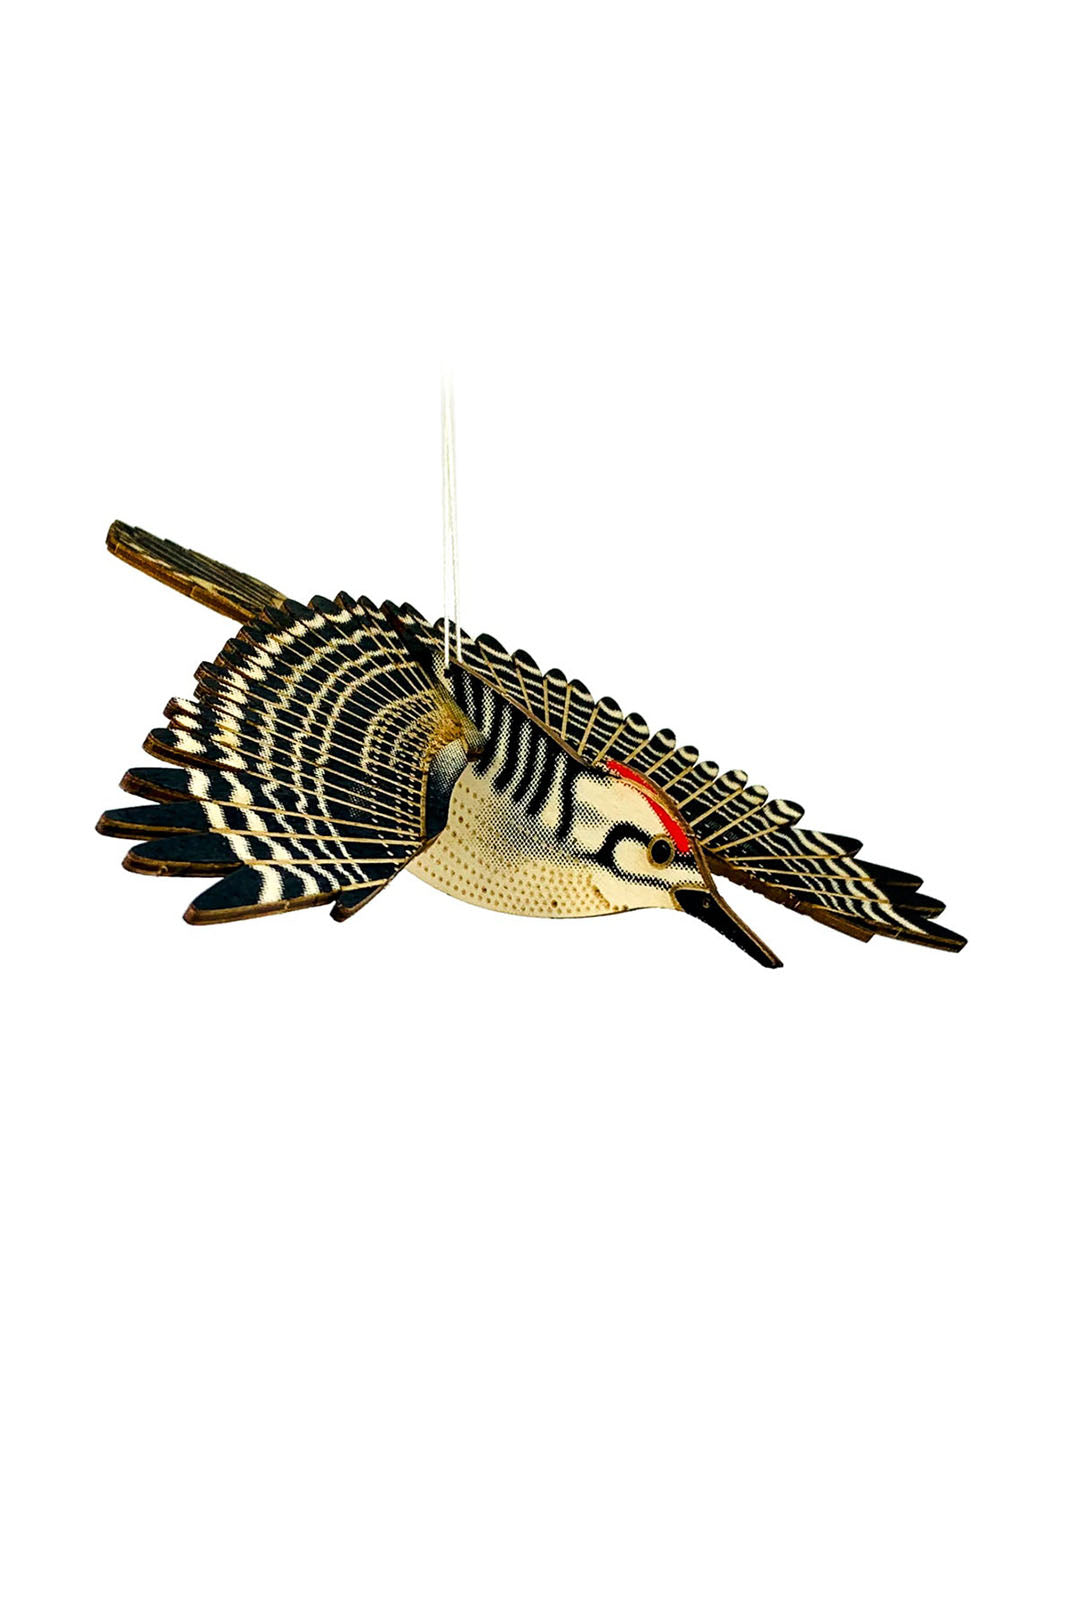 DIY Wood Model Kit - Woodpecker